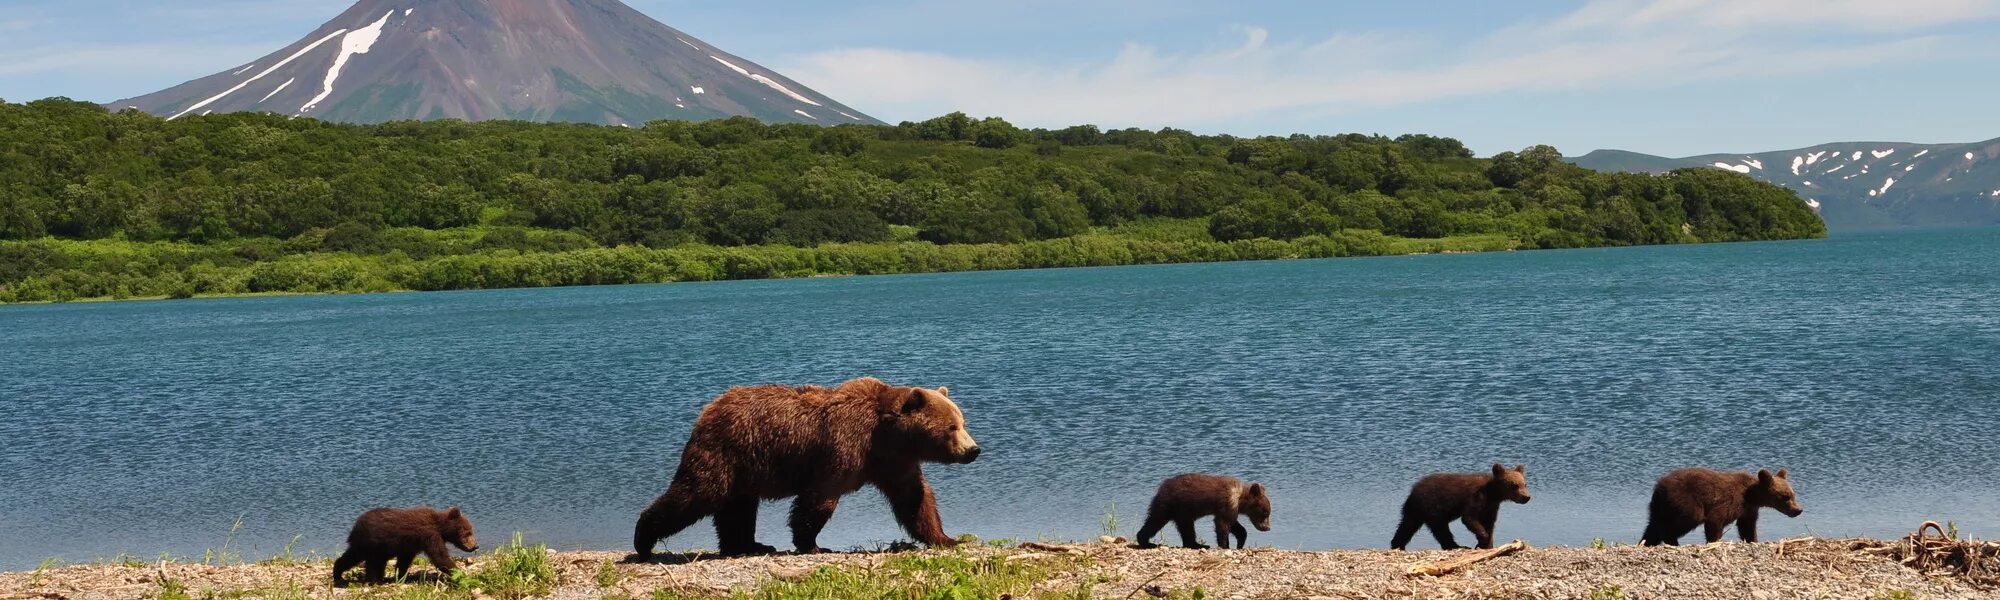 Остров Итуруп медведи. Остров Кунашир медведи. Итуруп медведь вулкан. Курильское озеро Камчатка. Дикие животные островов